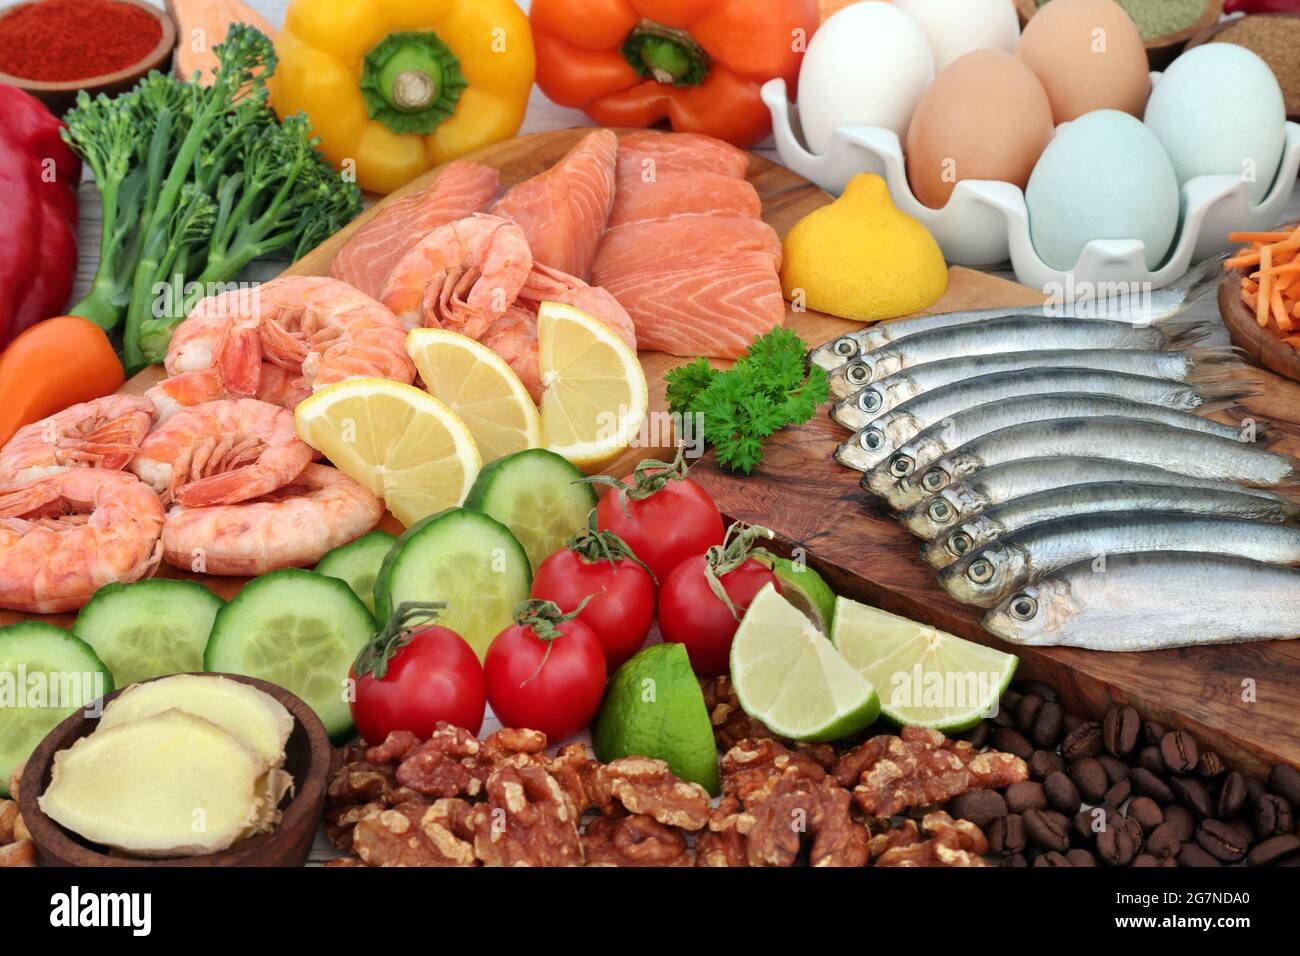 Concept alimentaire Pescatarien pour une alimentation équilibrée riche en protéines, oméga 3, vitamines, minéraux, antioxydants, lycopène, anthocyanes, fibres. Banque D'Images